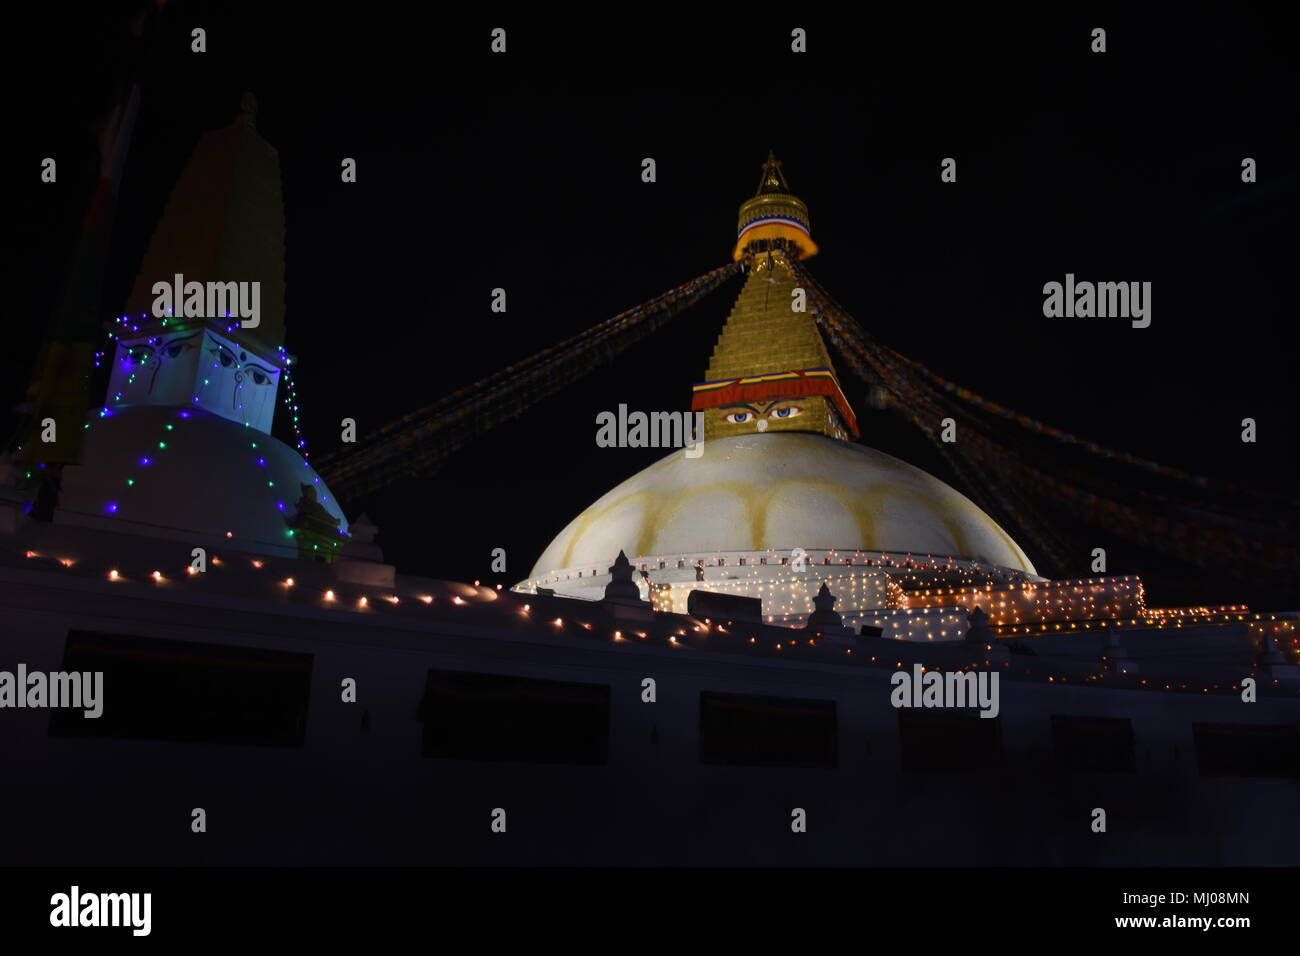 Illuminated Bouddha stupa at night, Kathmandu, Nepal Stock Photo